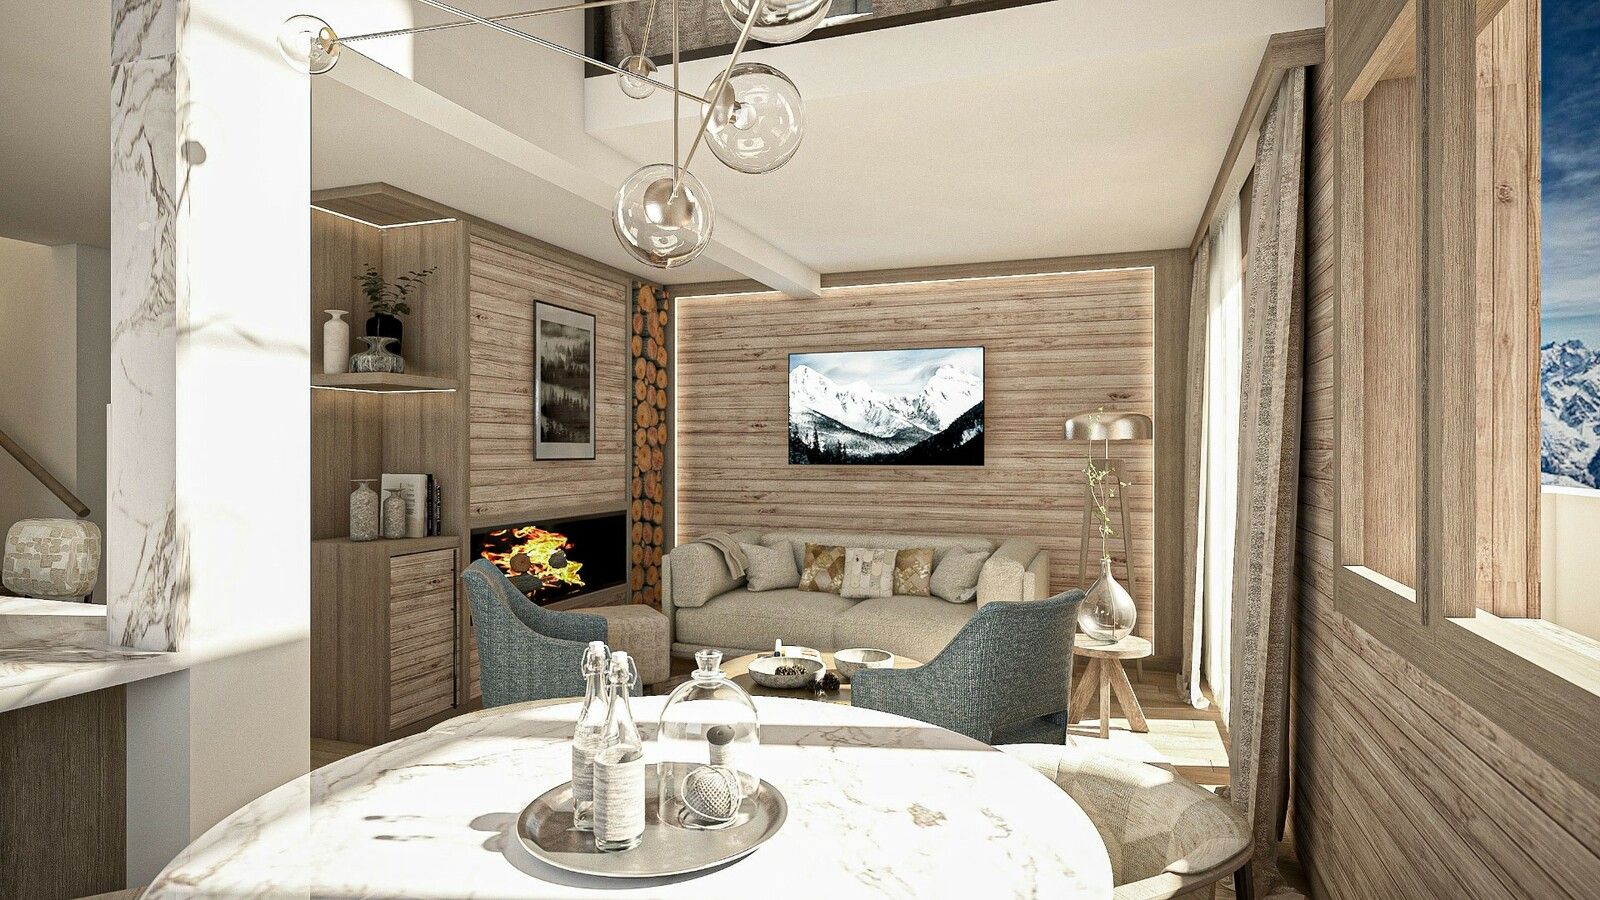 Appartement 2 chambres à vendre à Alpe d’Huez Grand Domaine, Alpes françaises